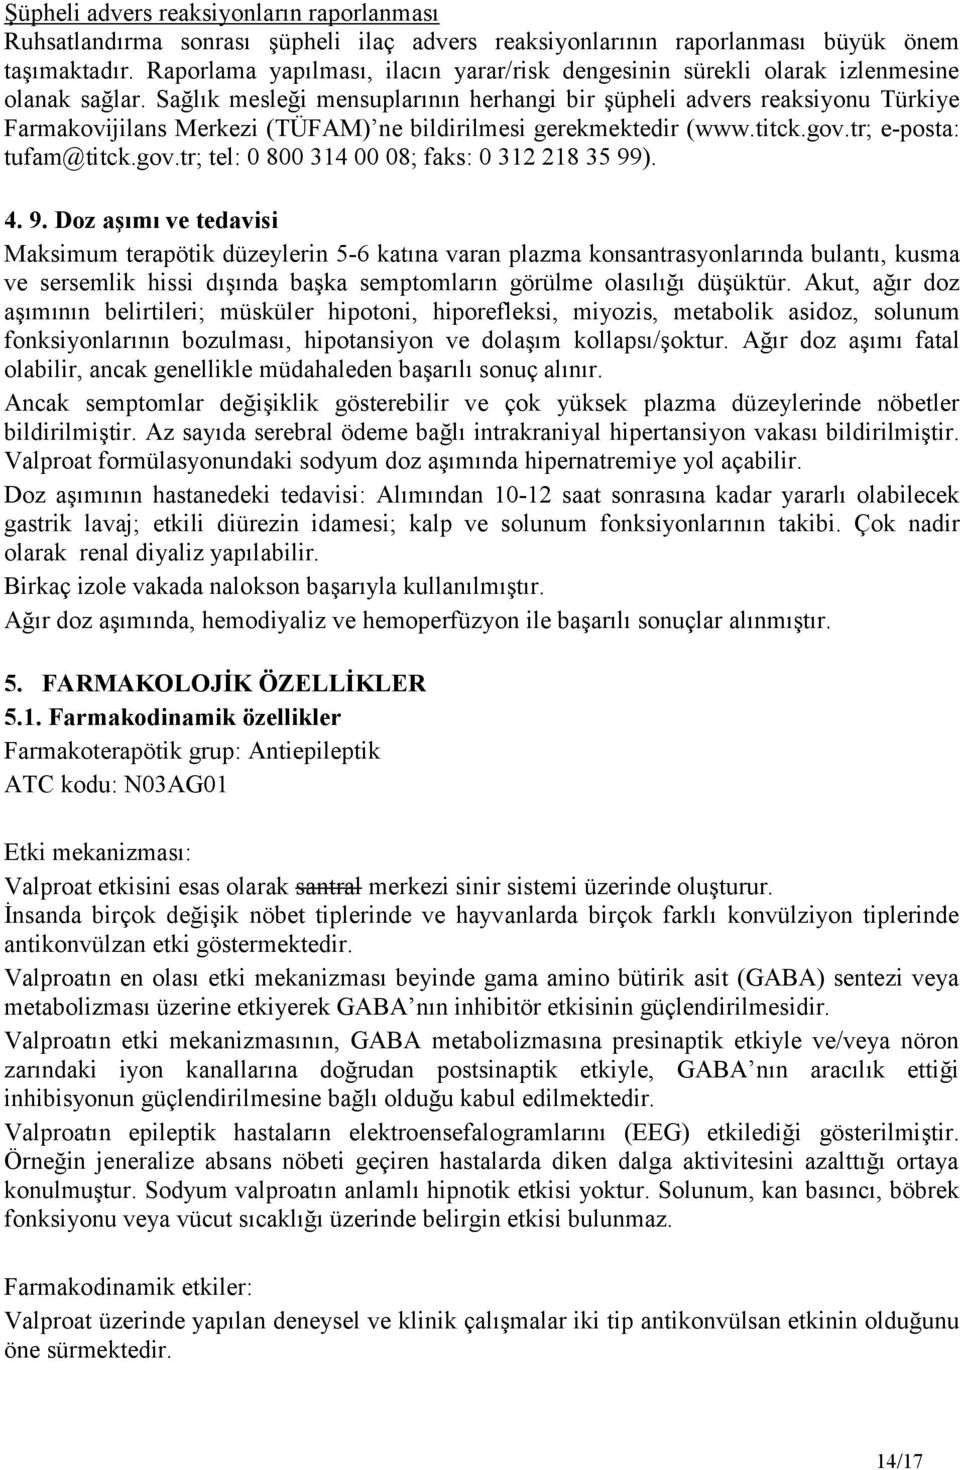 Sağlık mesleği mensuplarının herhangi bir şüpheli advers reaksiyonu Türkiye Farmakovijilans Merkezi (TÜFAM) ne bildirilmesi gerekmektedir (www.titck.gov.